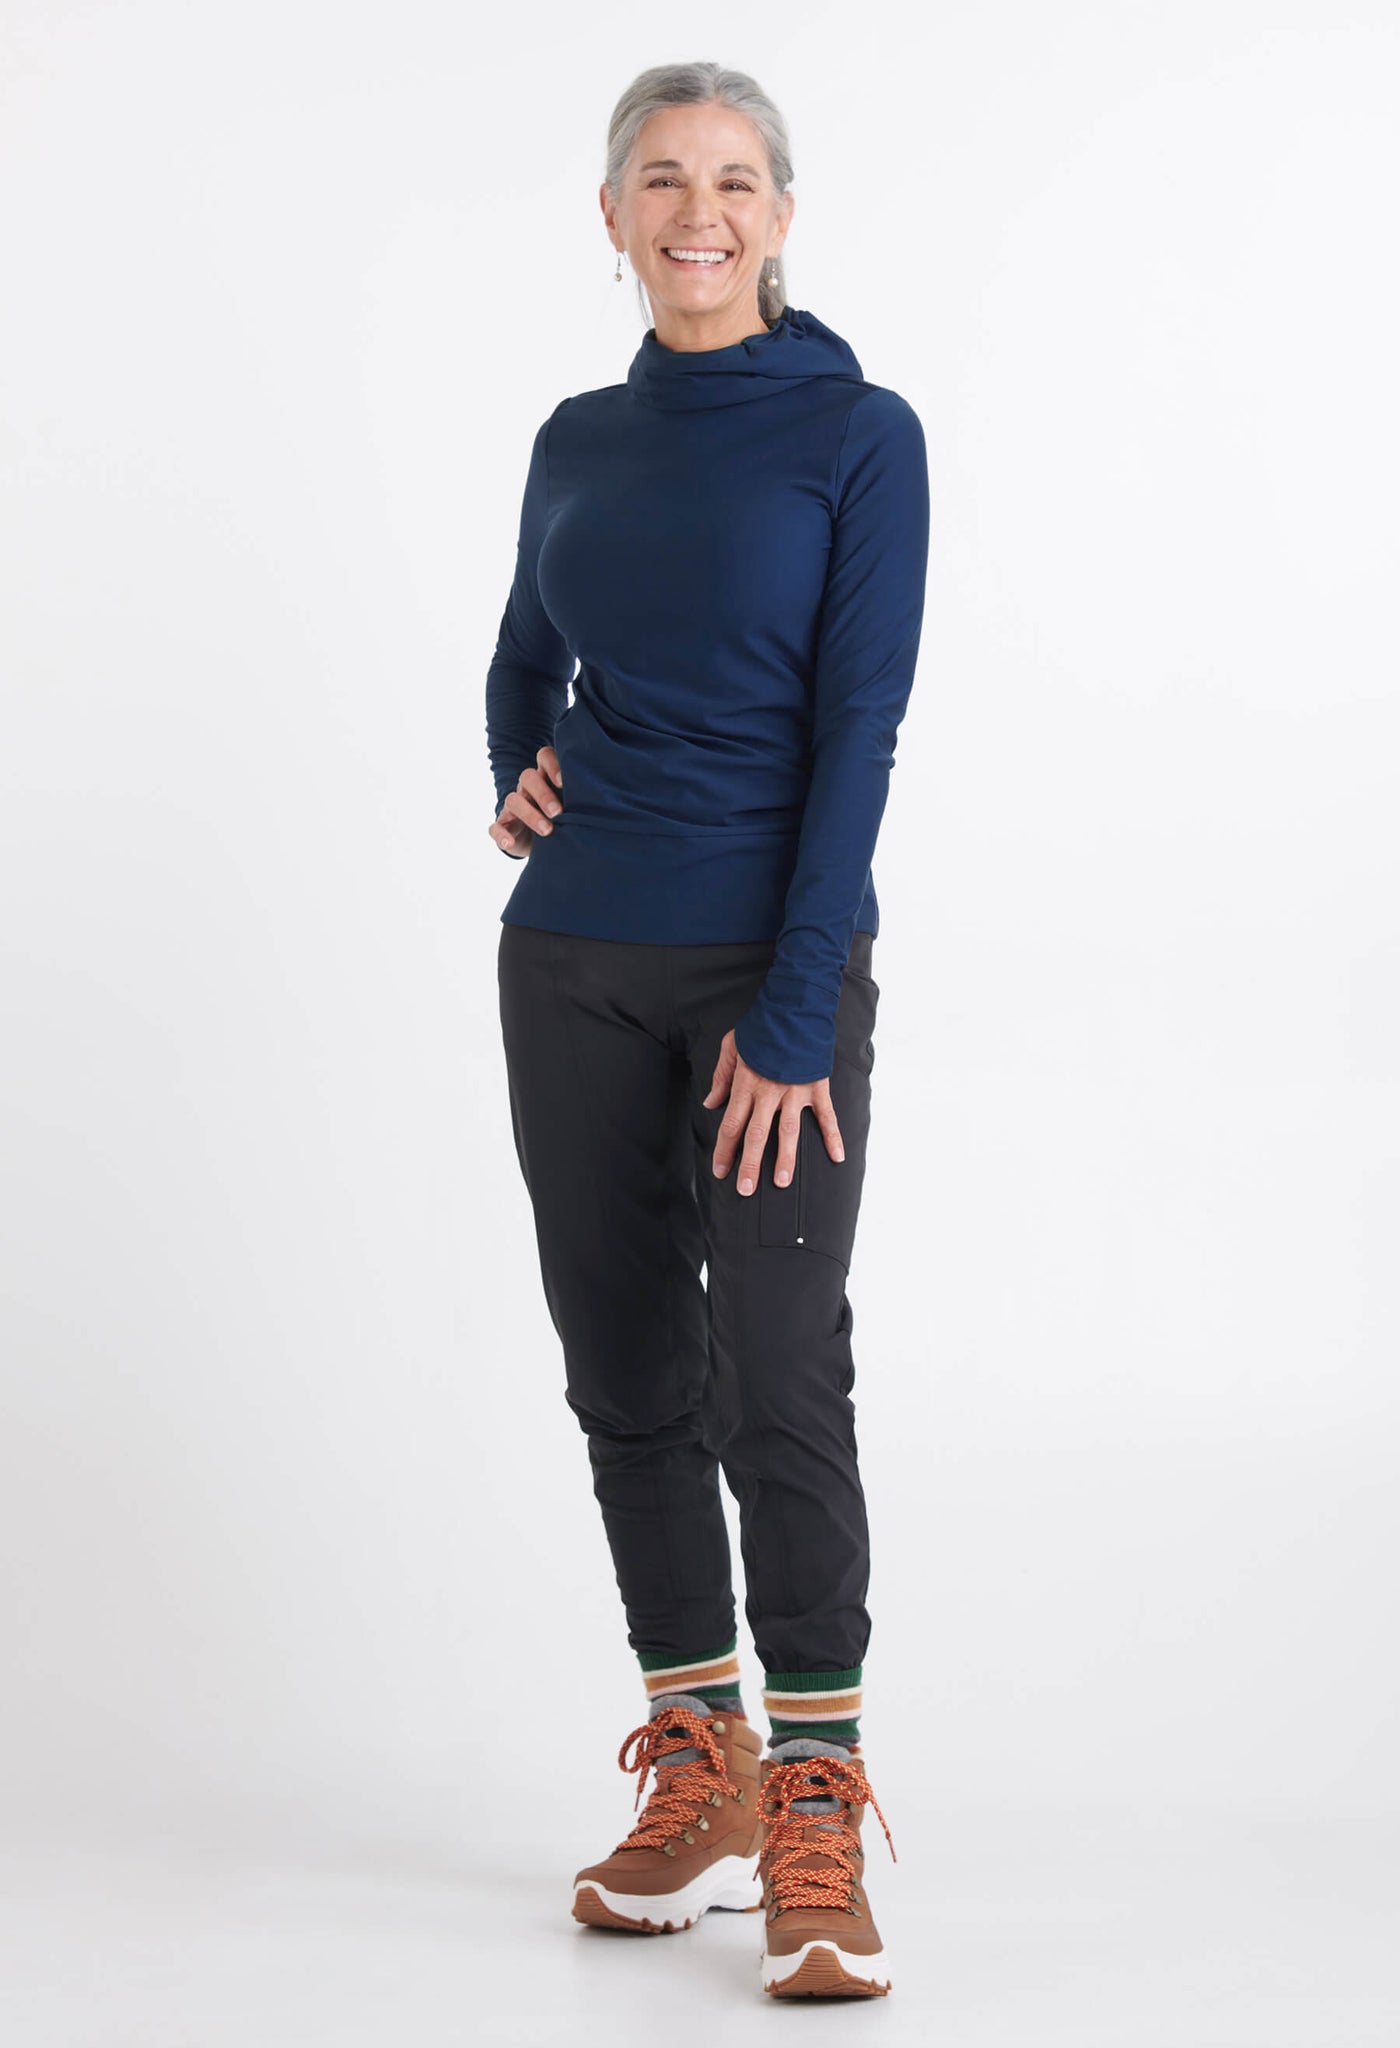 Chandail Bianca marine porté avec le pantalon Renée noir, créations québécoises par KSL!